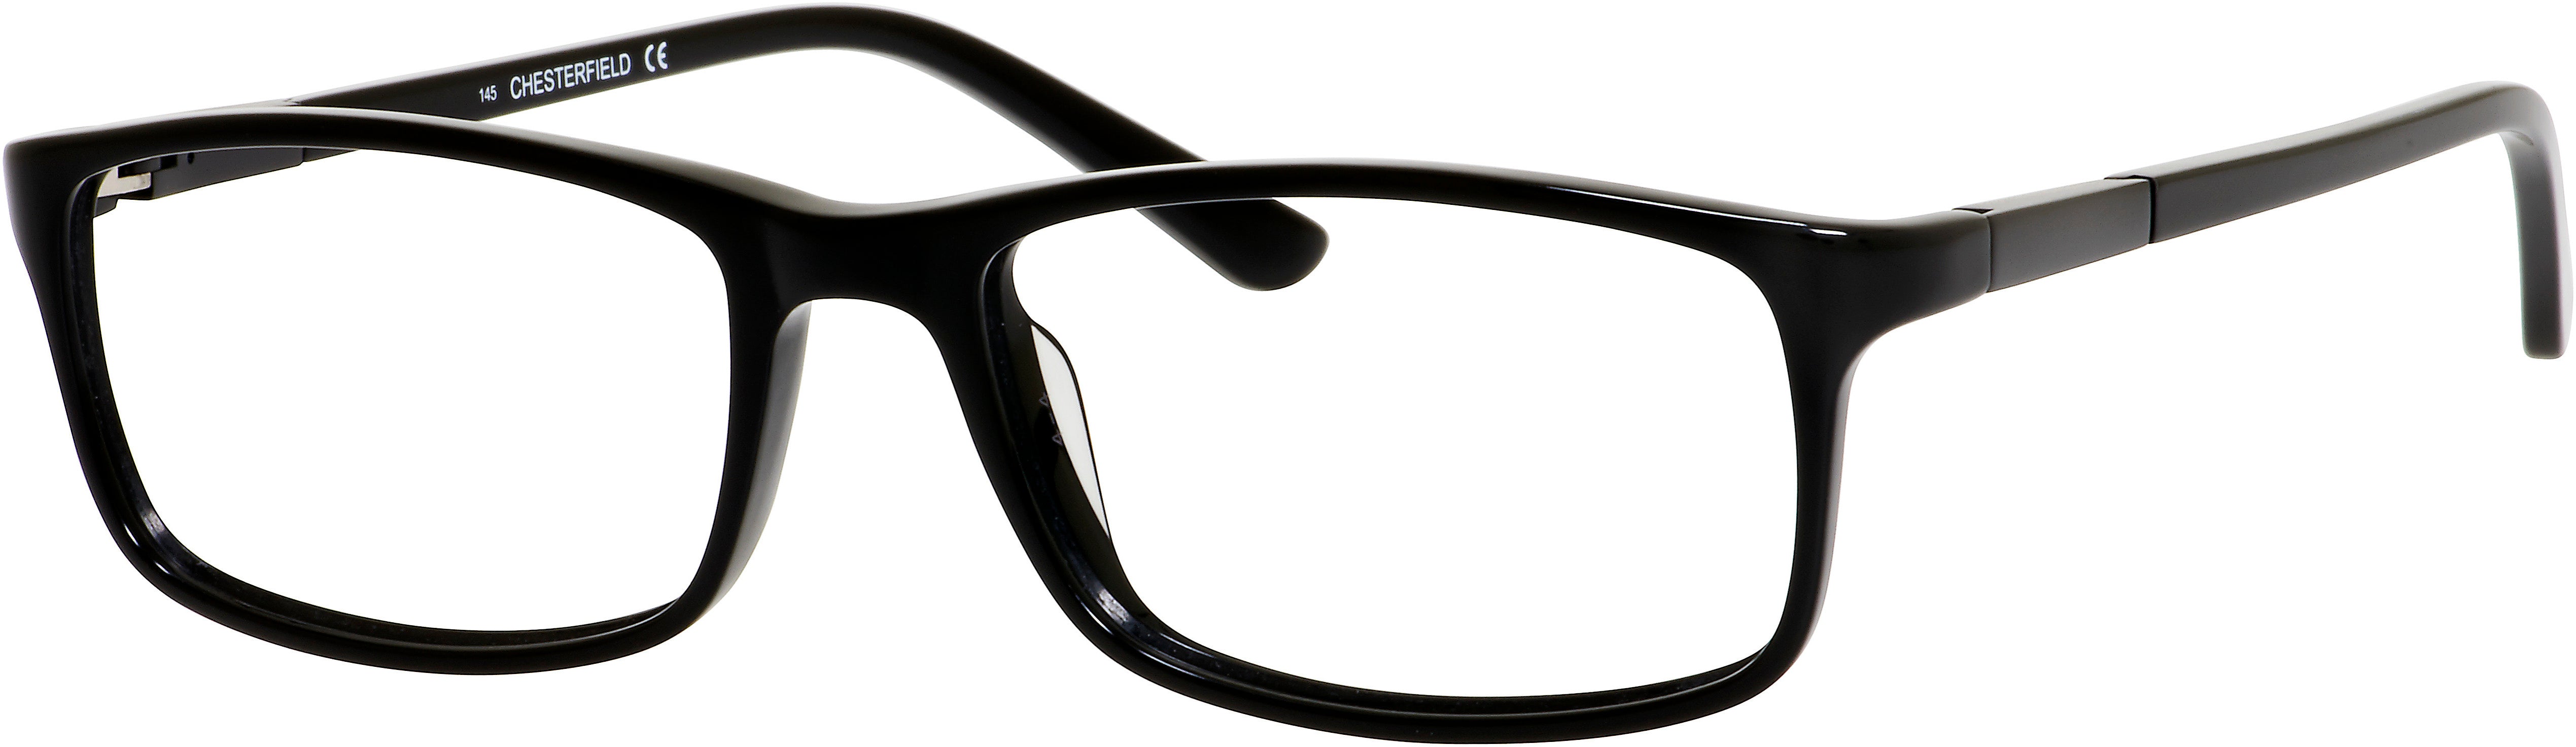  Chesterfield 30XL Rectangular Eyeglasses 0807-0807  Black (00 Demo Lens)